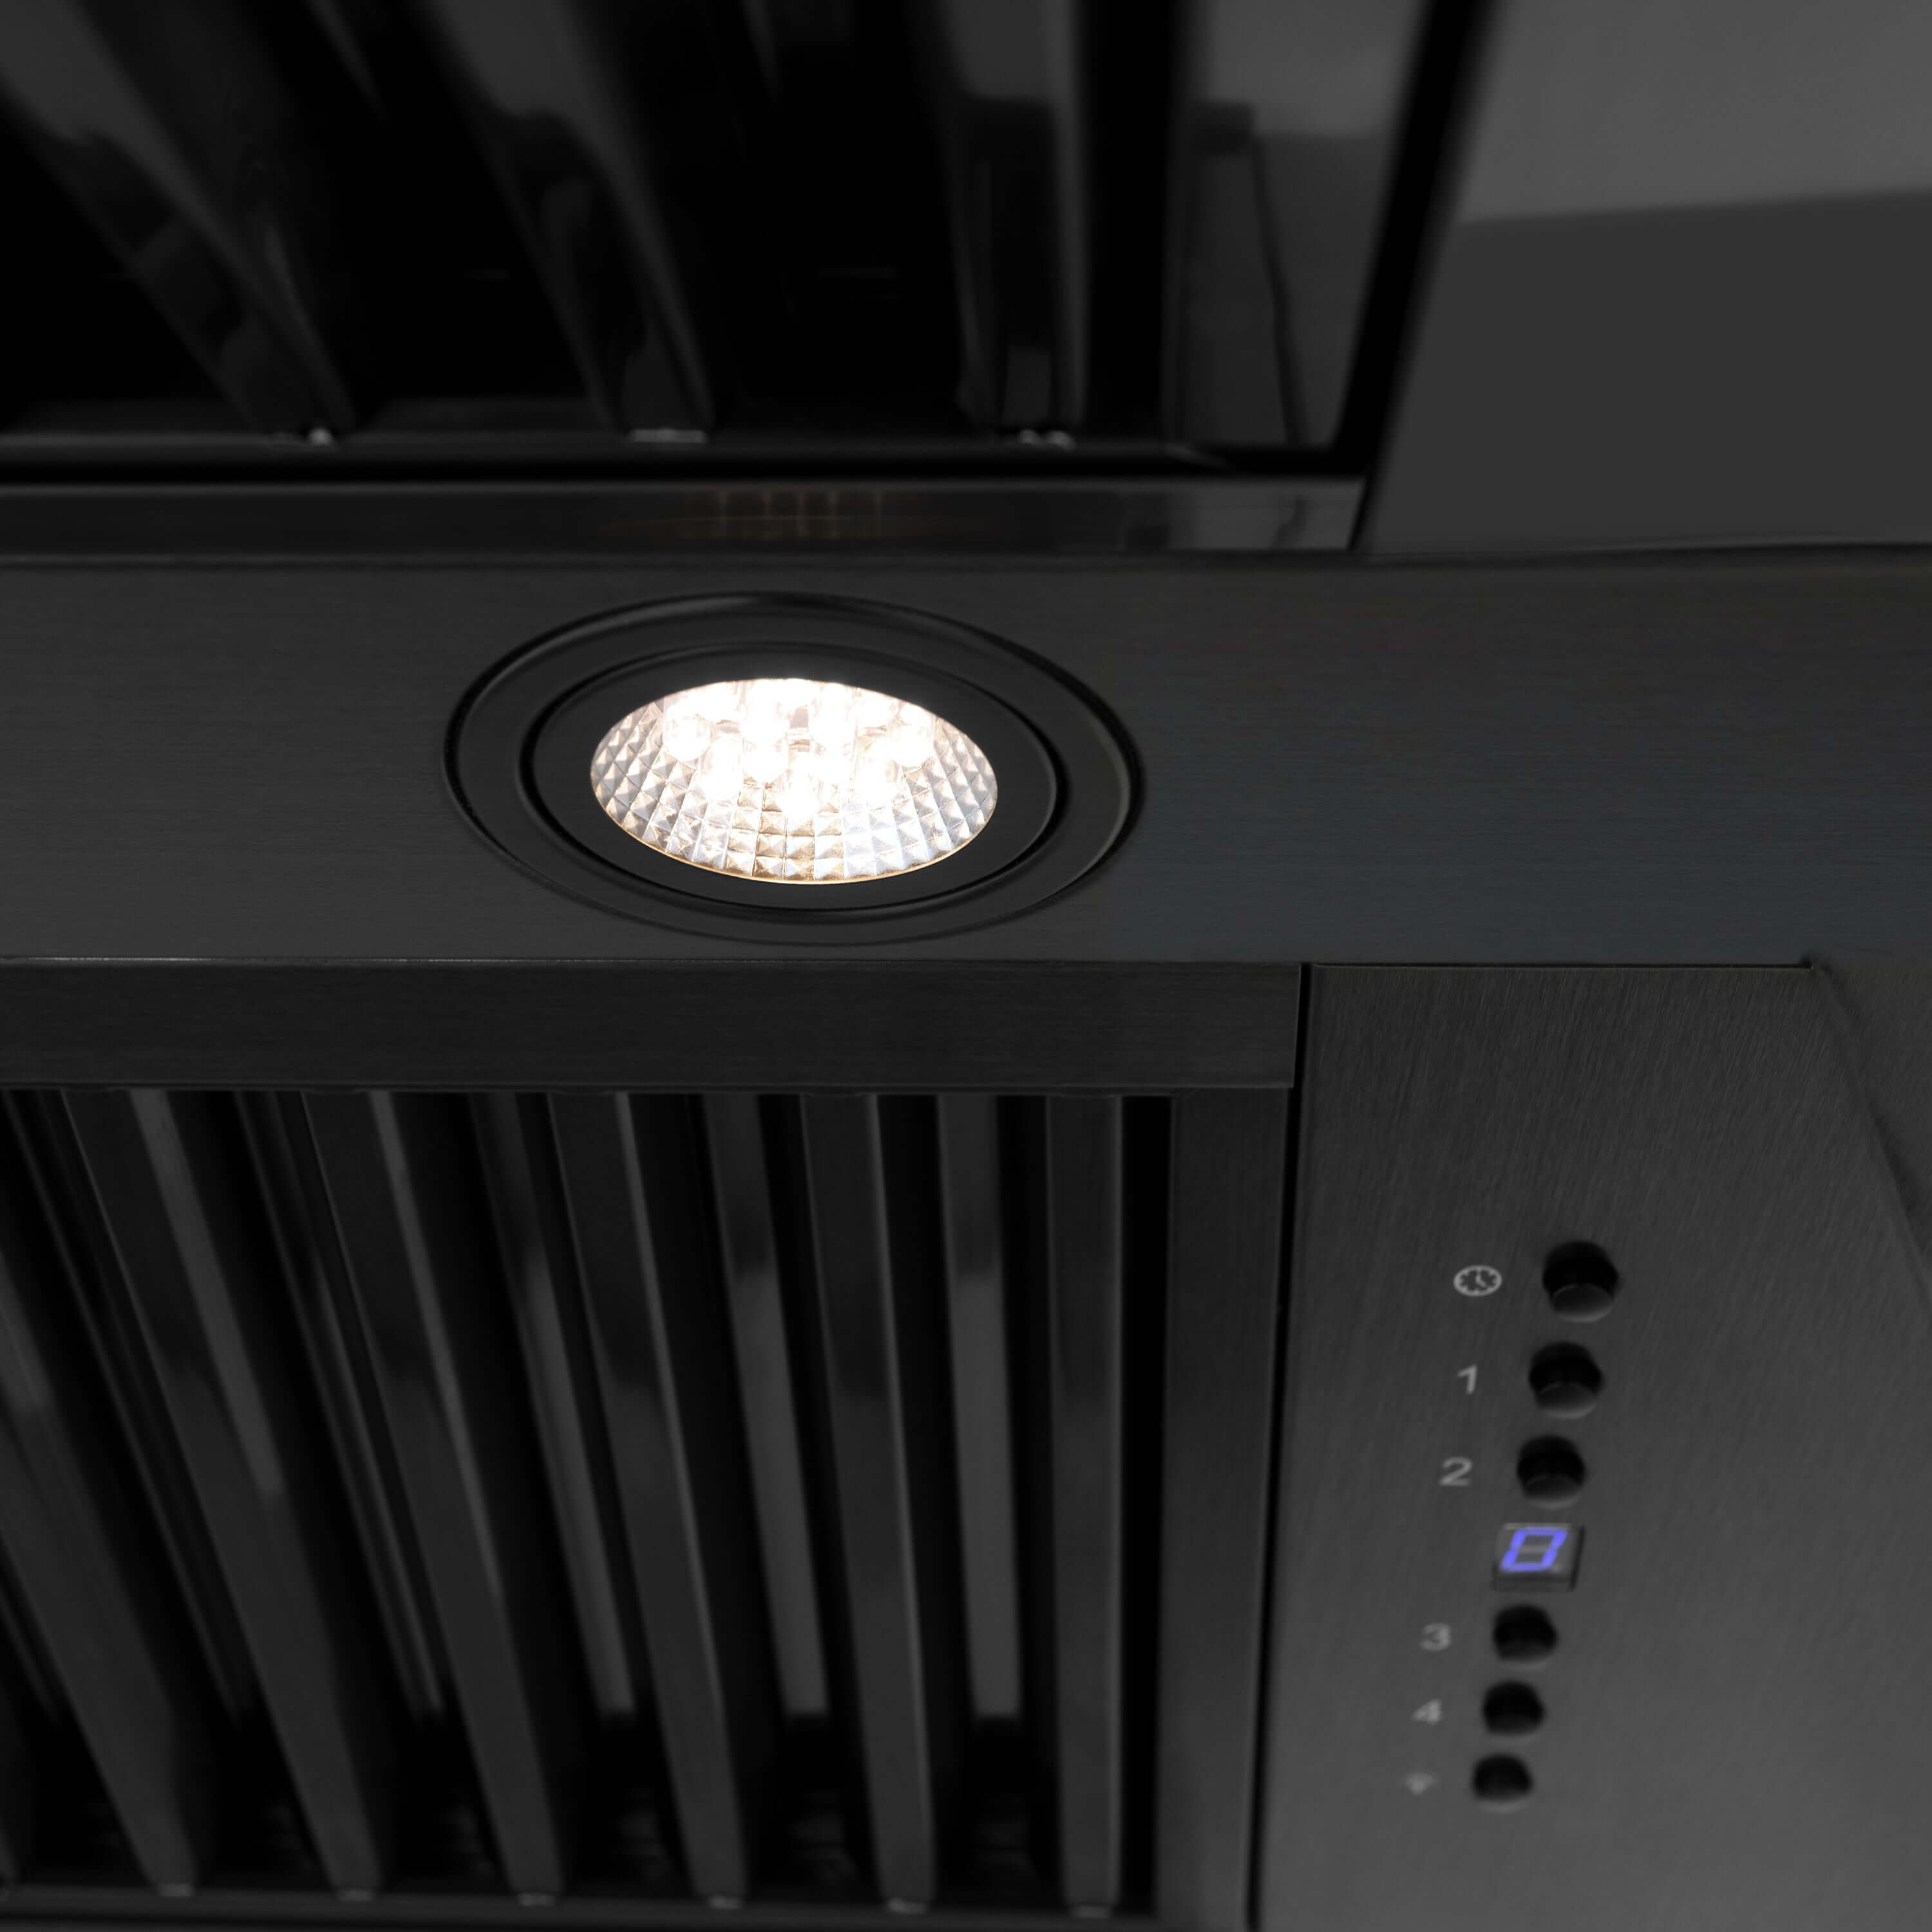 Built-in directional LED lighting on ZLINE black stainless steel range hood.